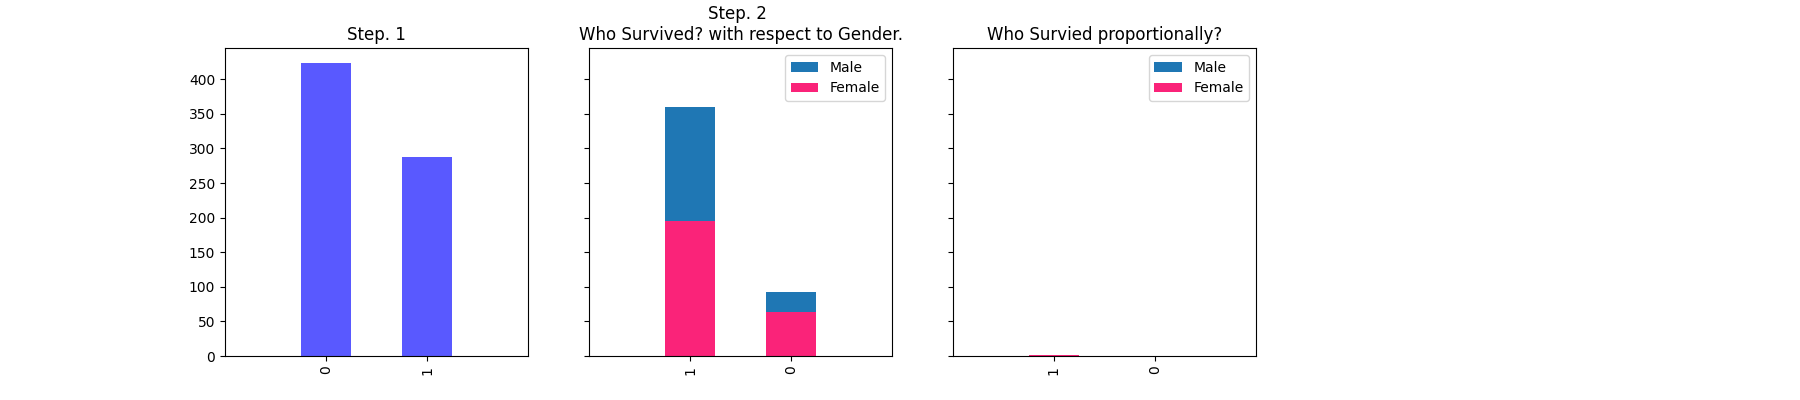 Gender Proportion Breakdown